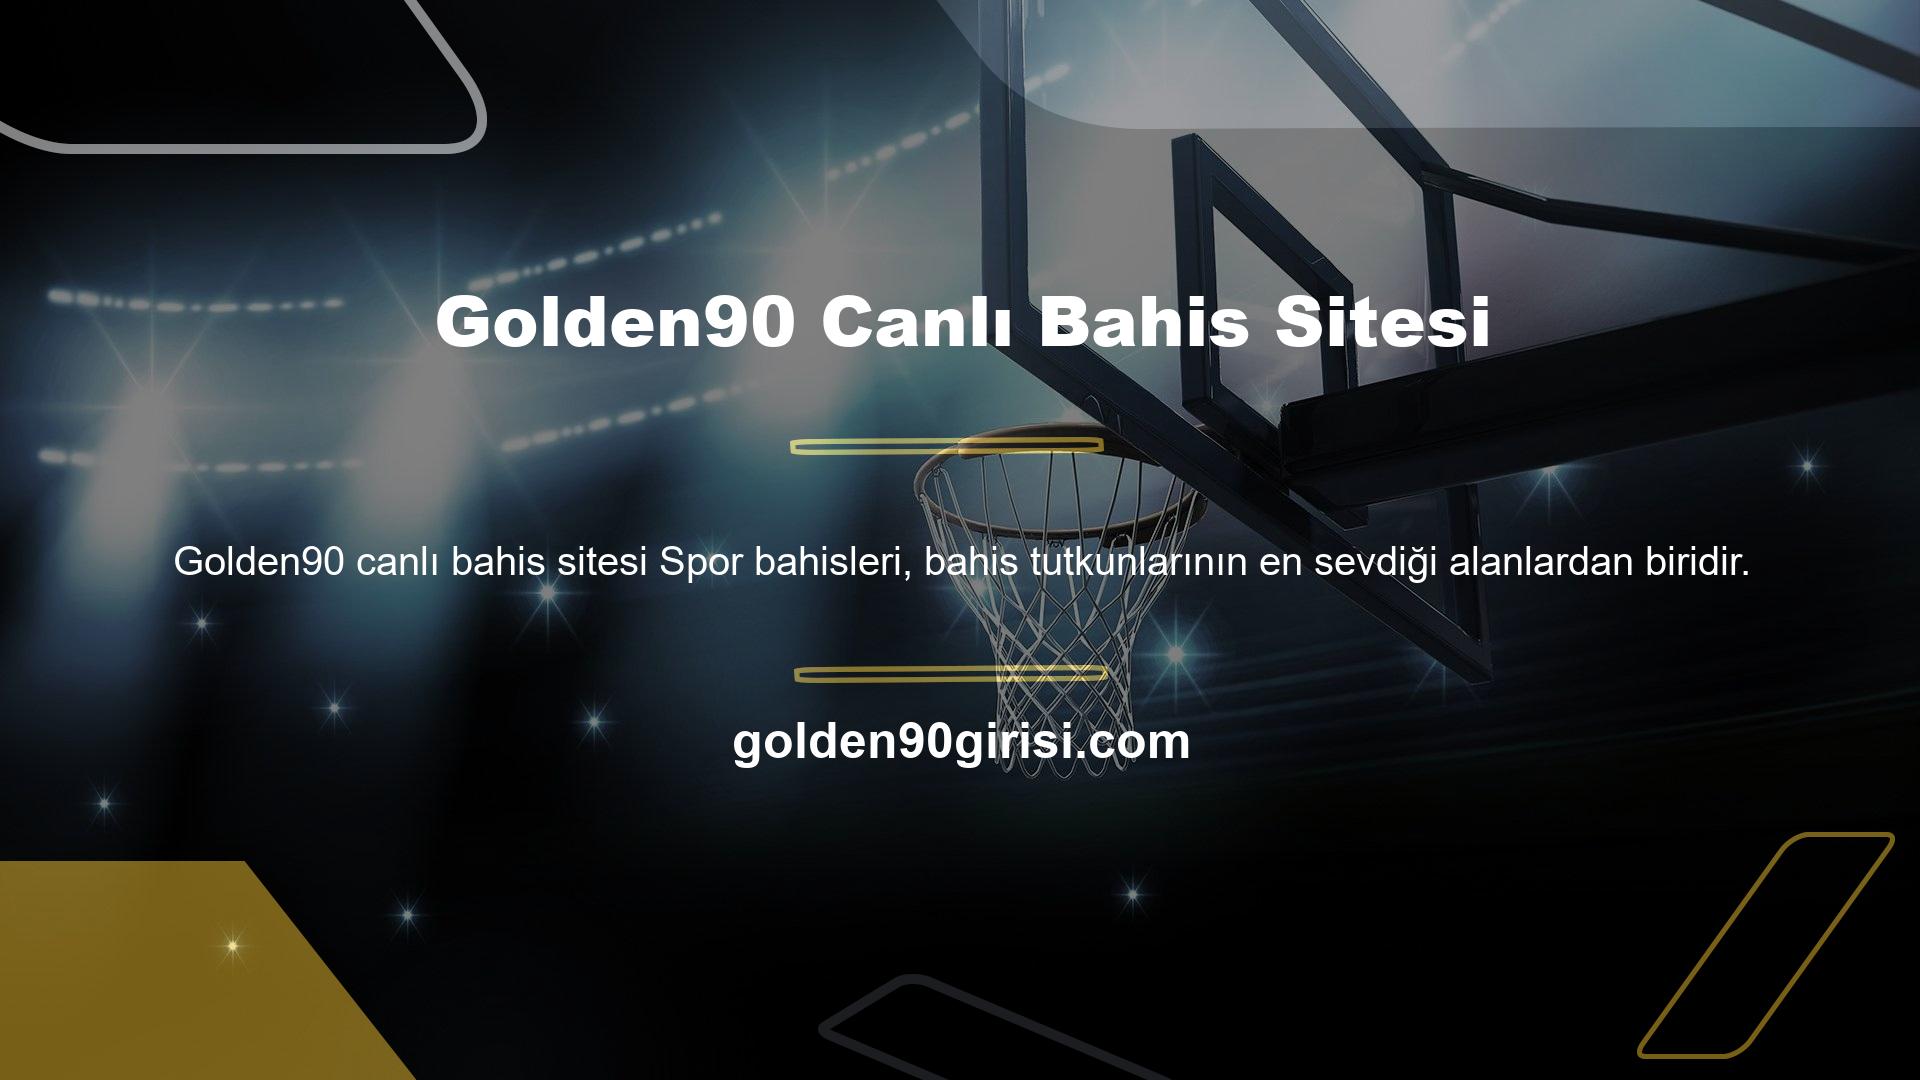 Üyeler, Golden90 bahis sitesinde bahis seçenekleri canlı bahis uygulamasını kullanarak bahis yapabilirler